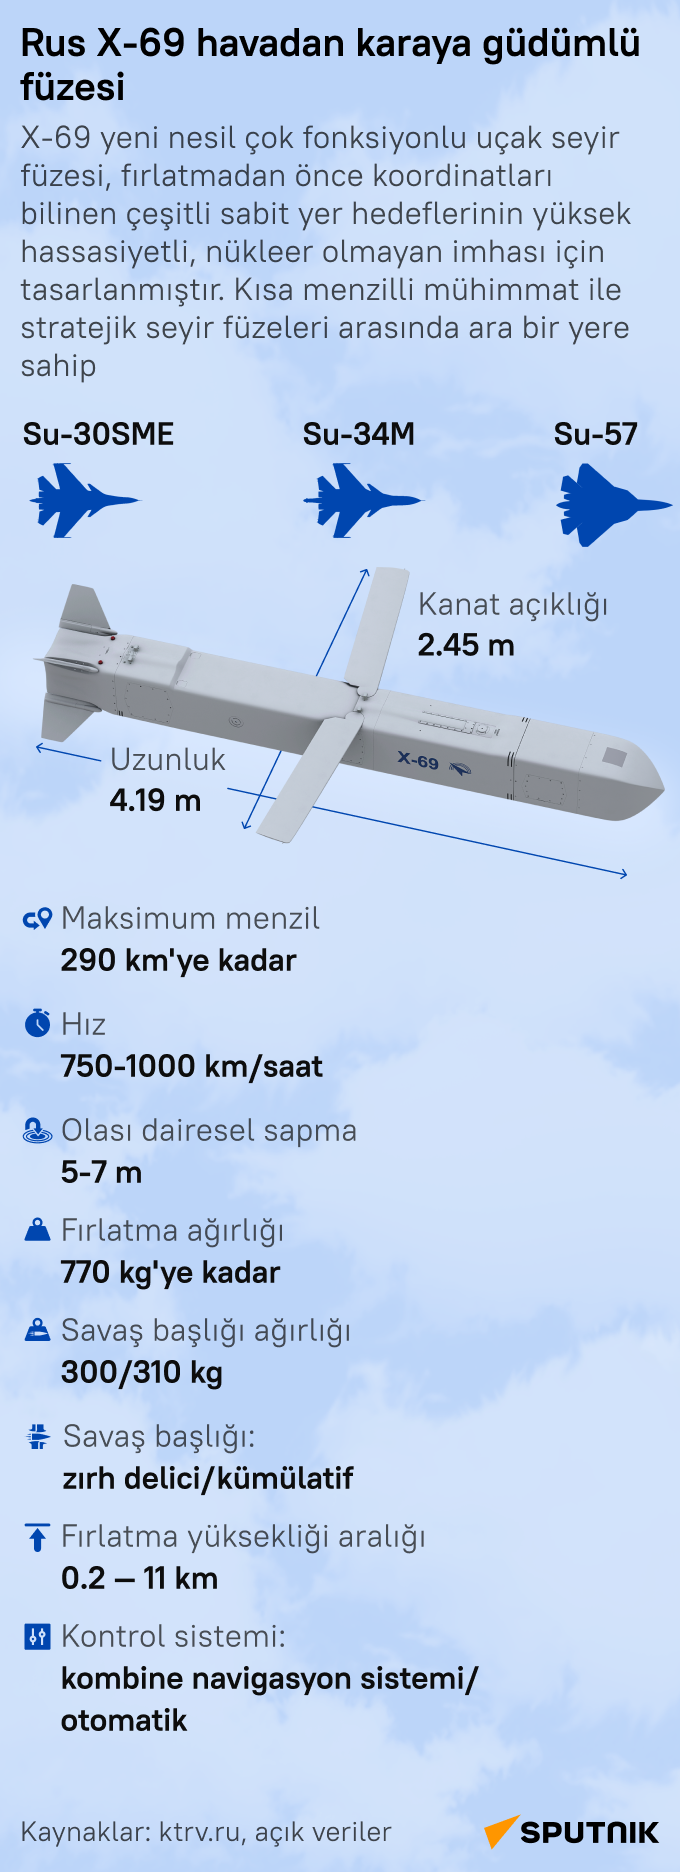 Rus yeni nesil X-69 güdümlü füzesinin teknik özellikleri neler? - Sputnik Türkiye